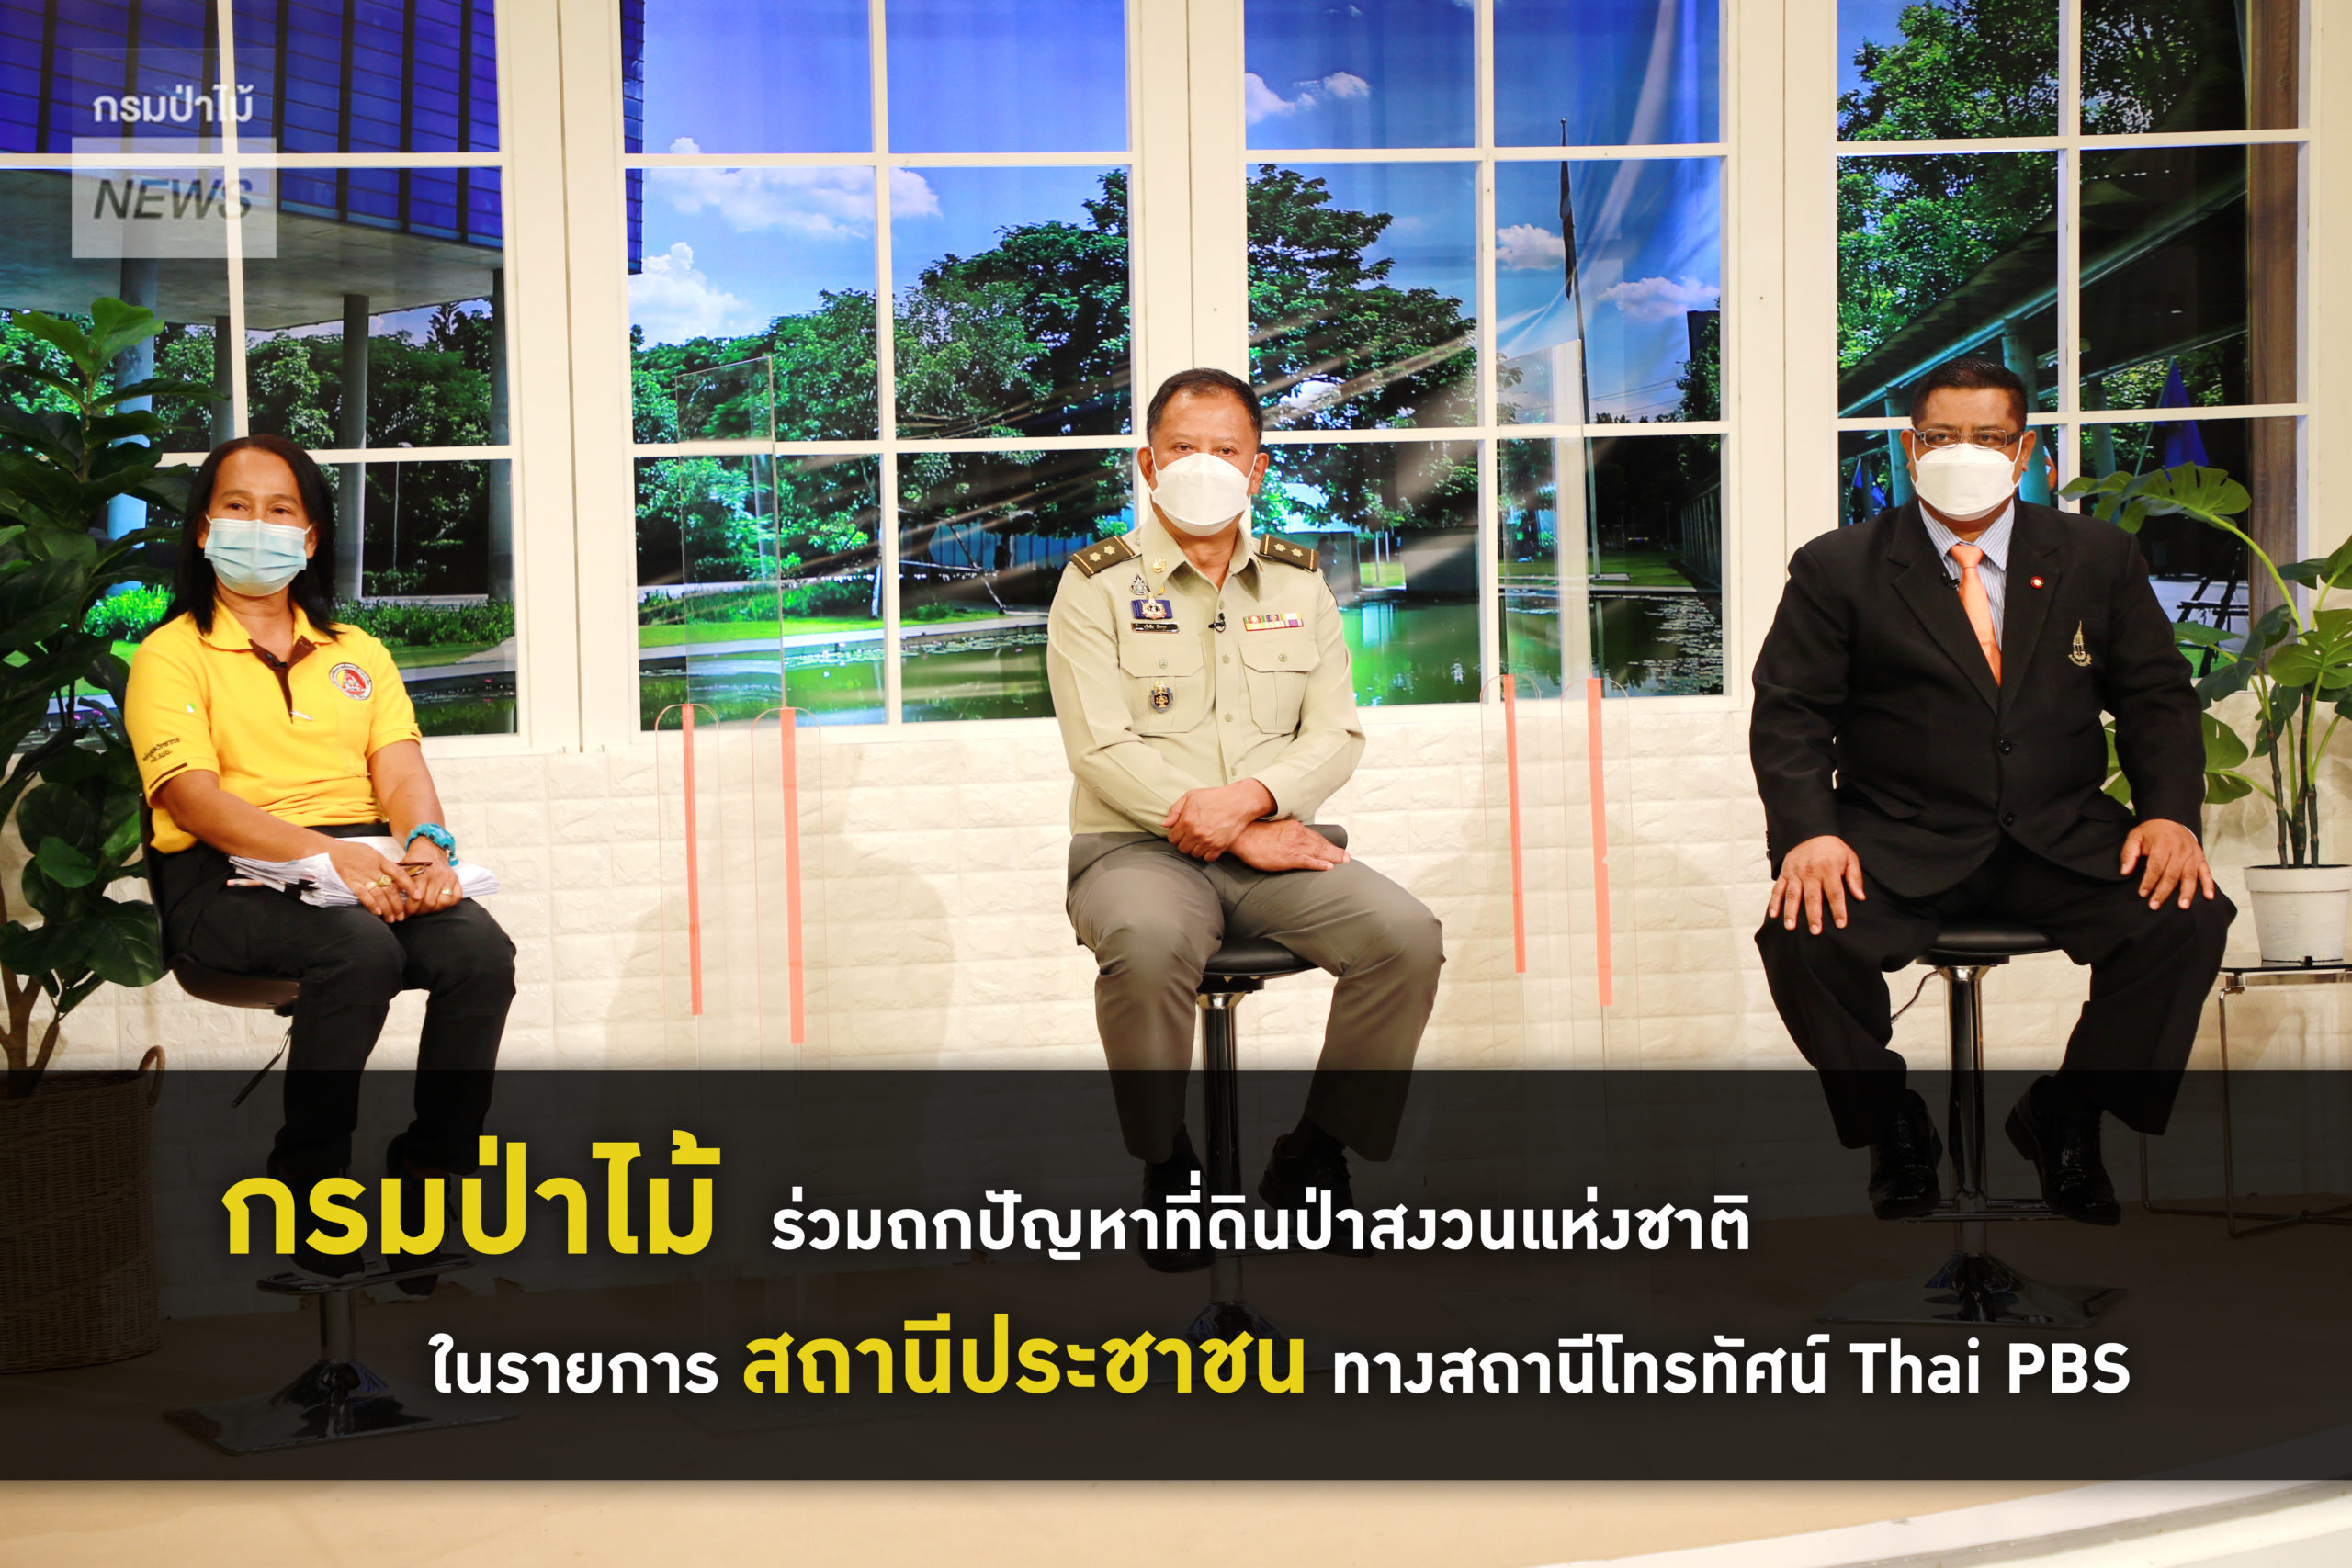 นายธวัชชัย ลัดกรูด ผู้ตรวจราชการกรมป่าไม้ รักษาราชการแทนรองอธิบดีกรมป่าไม้ ร่วมถกปัญหาที่ดินป่าสงวนแห่งชาติ ในรายการ สถานีประชาชน ทางสถานีโทรทัศน์ Thai PBS